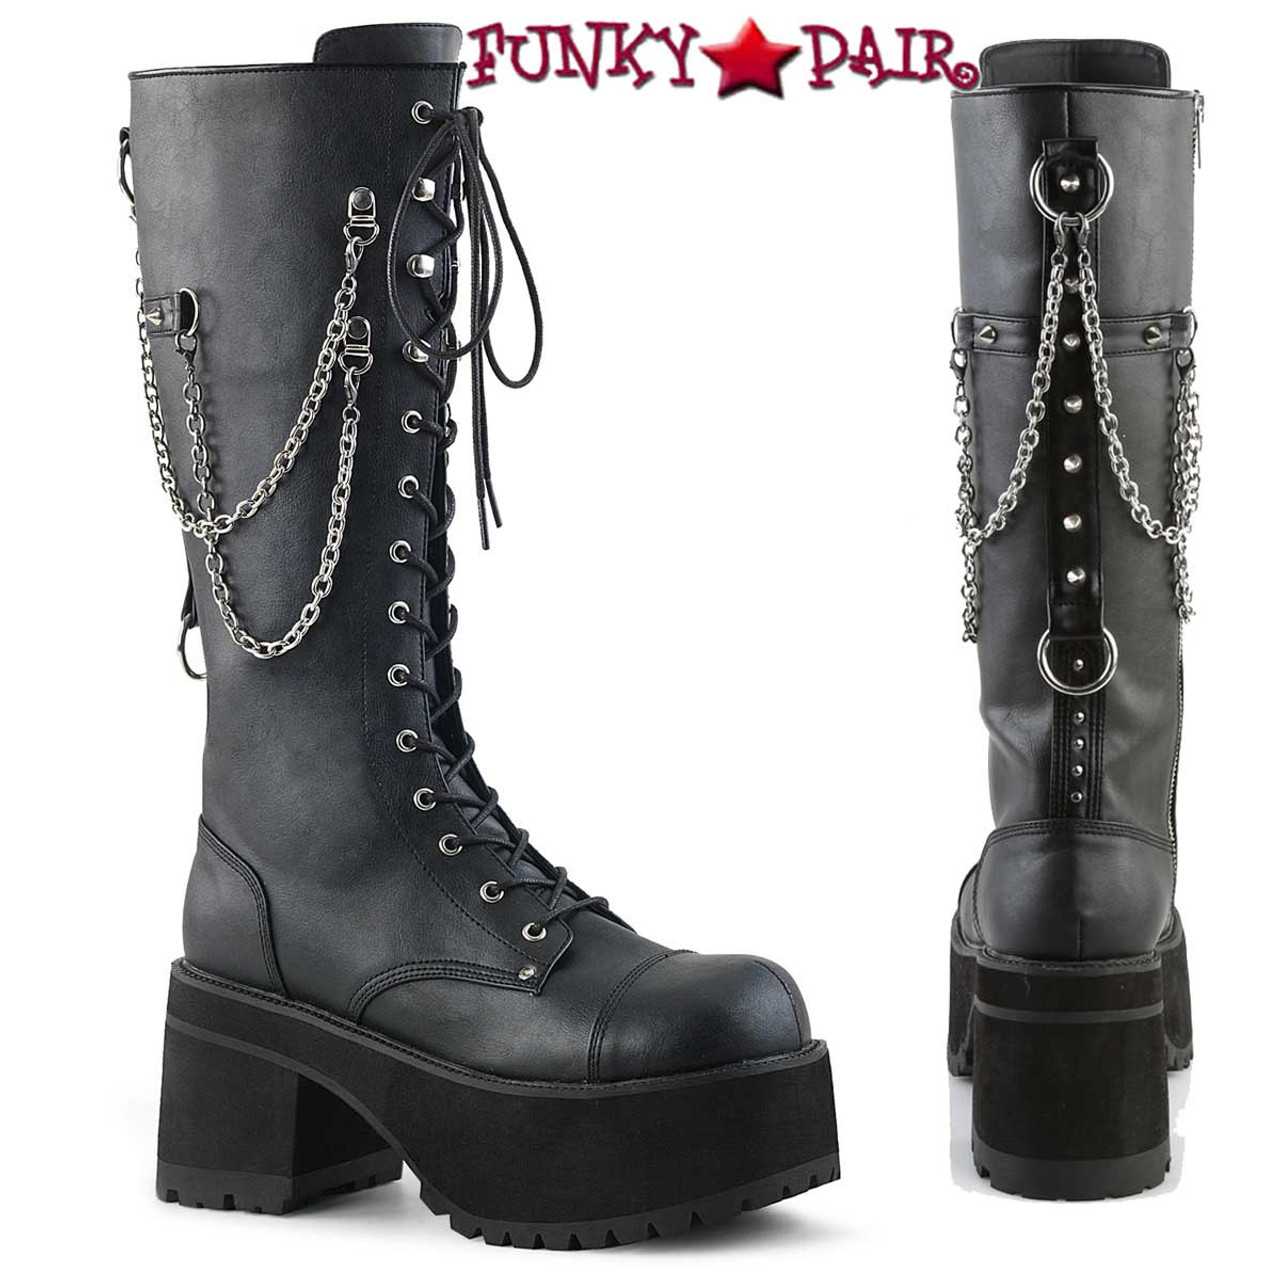 Demonia | Ranger-303 Women's Punk Rock Chains & Studded Boots